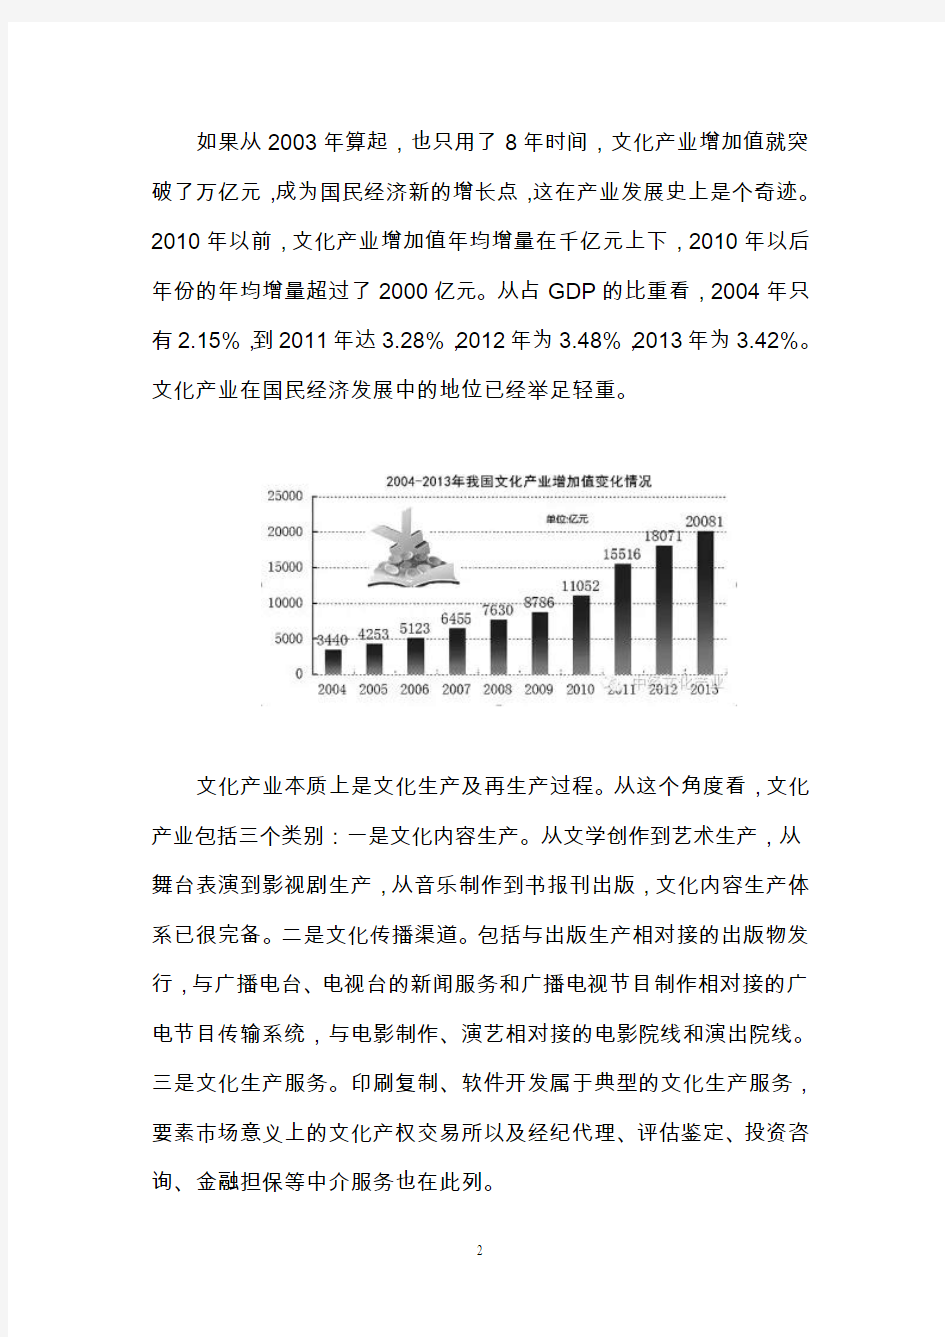 中国文化产业对比发展报告